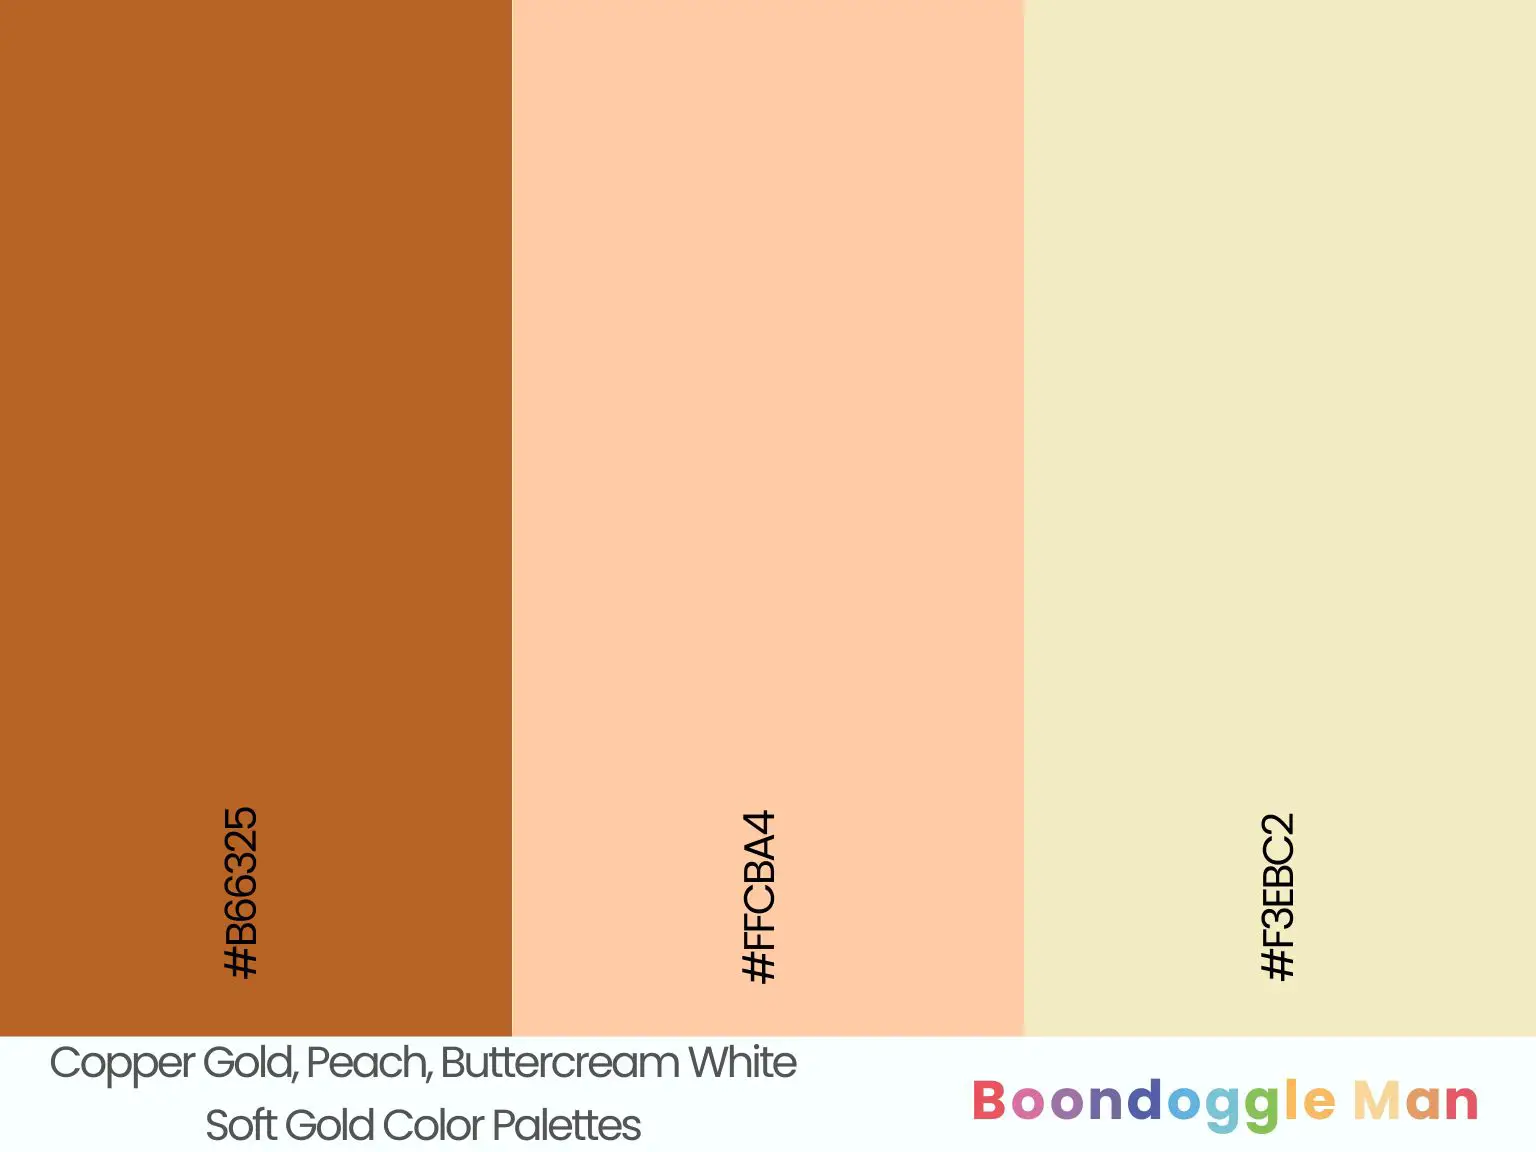 Copper Gold, Peach, Buttercream White